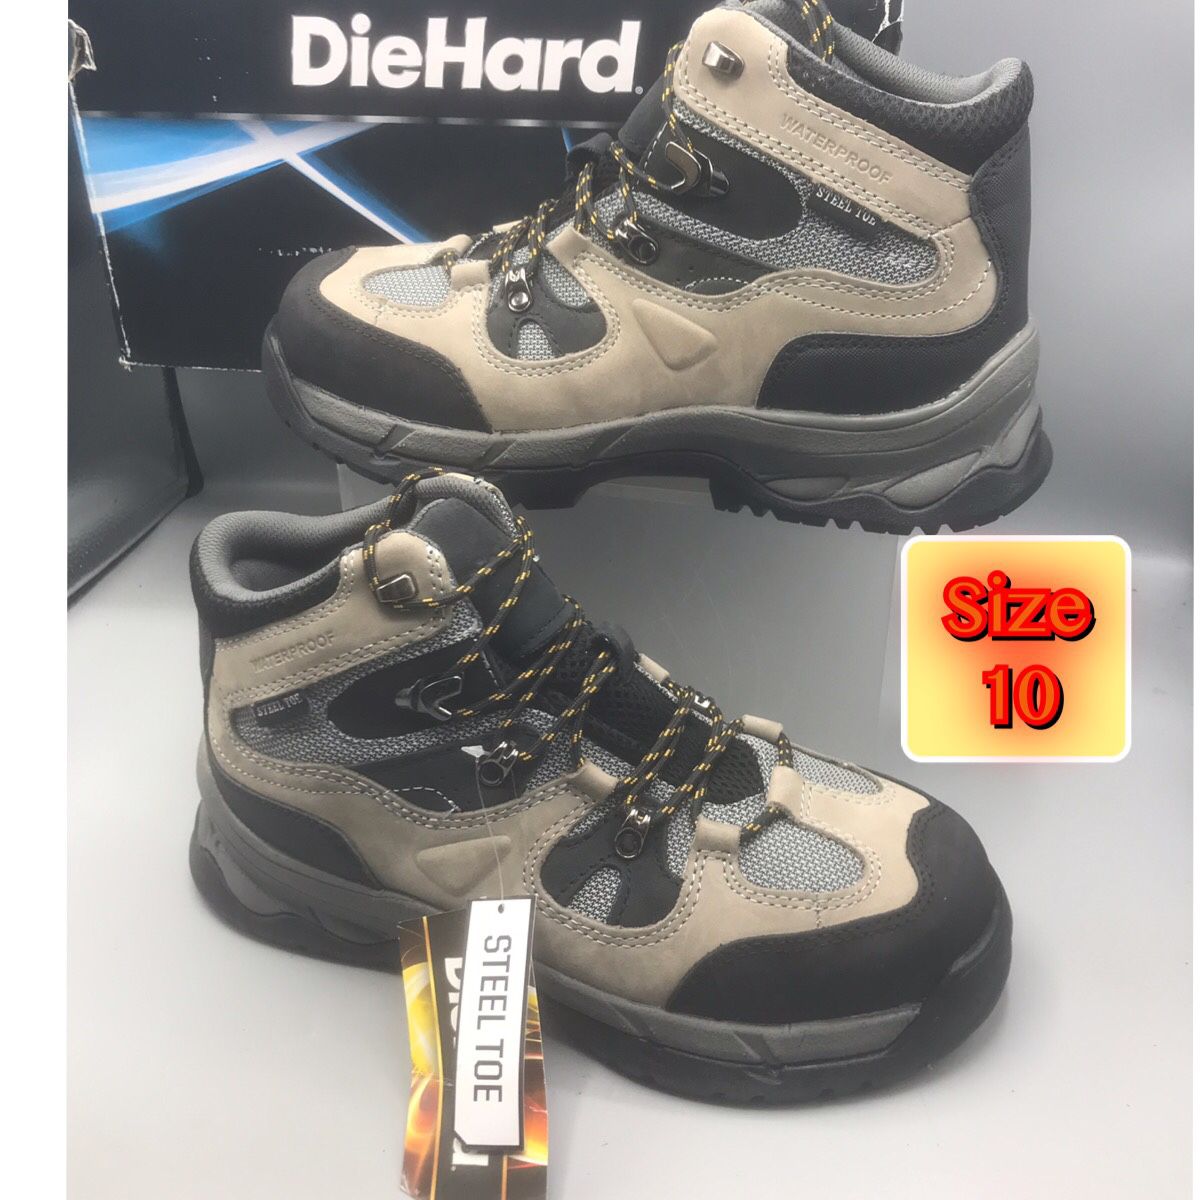 Dir Hard Men's Steel Toe Waterproof Boots Size 10